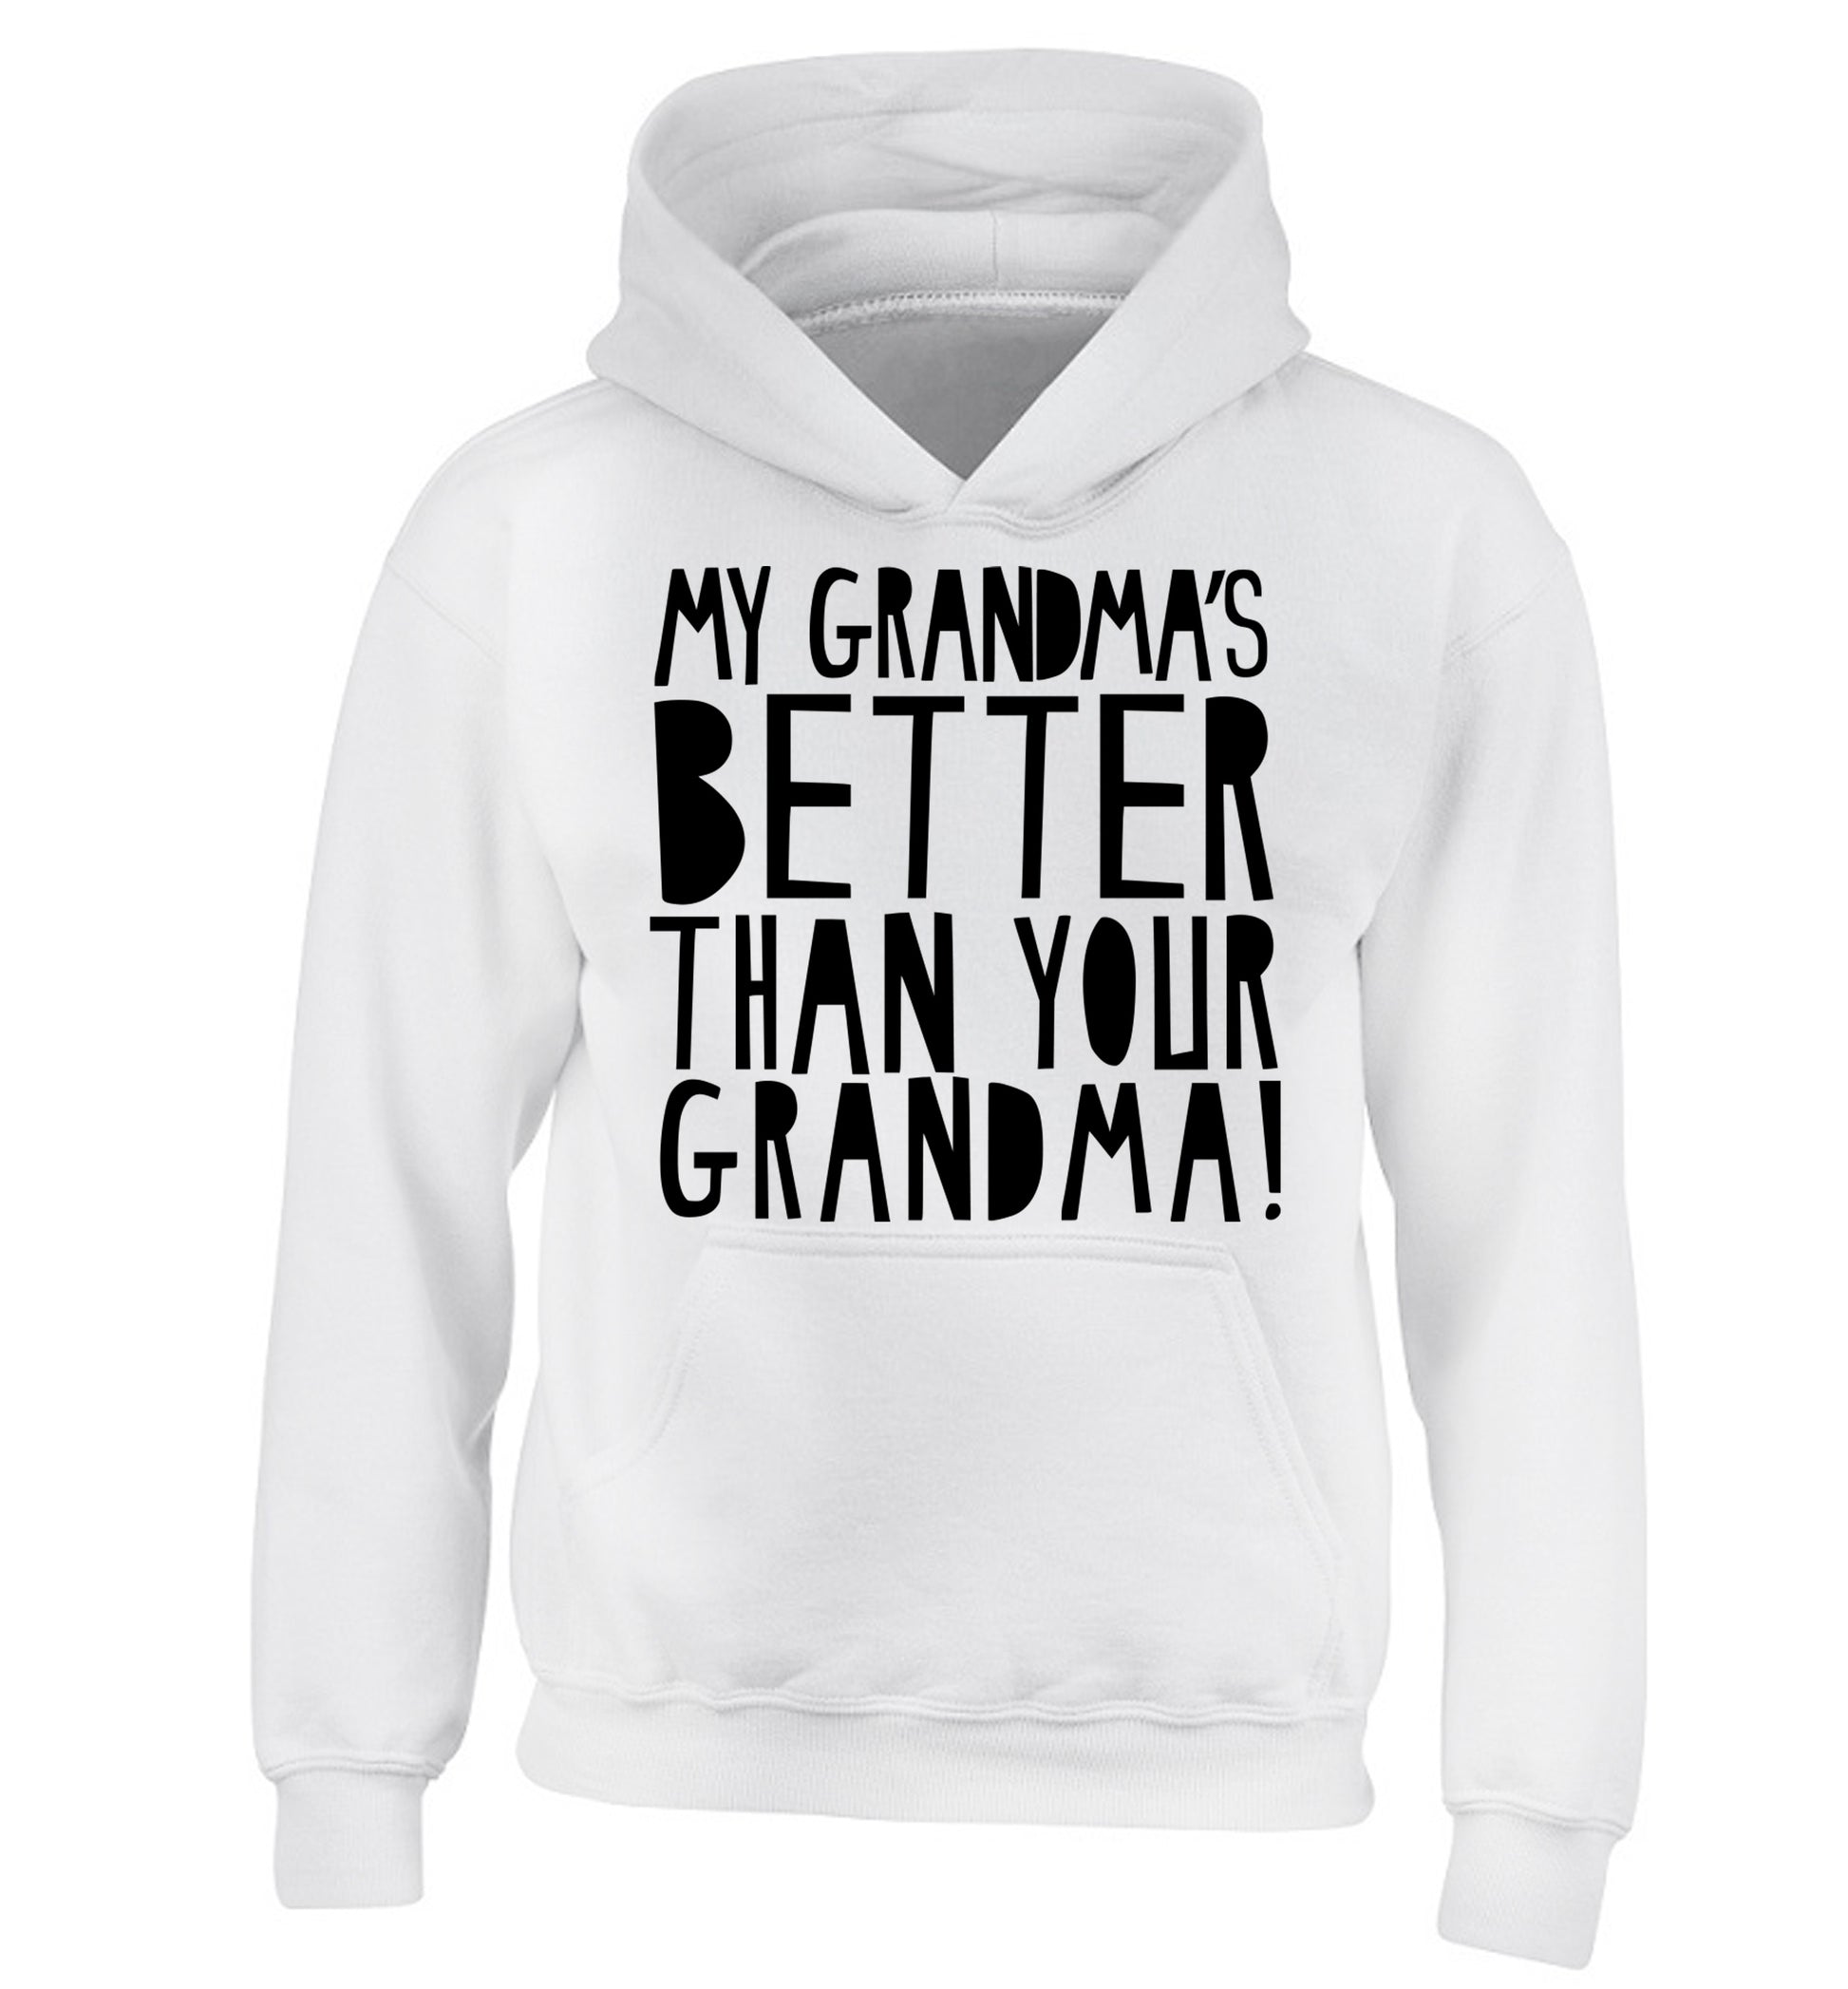 My grandma's better than your grandma children's white hoodie 12-13 Years